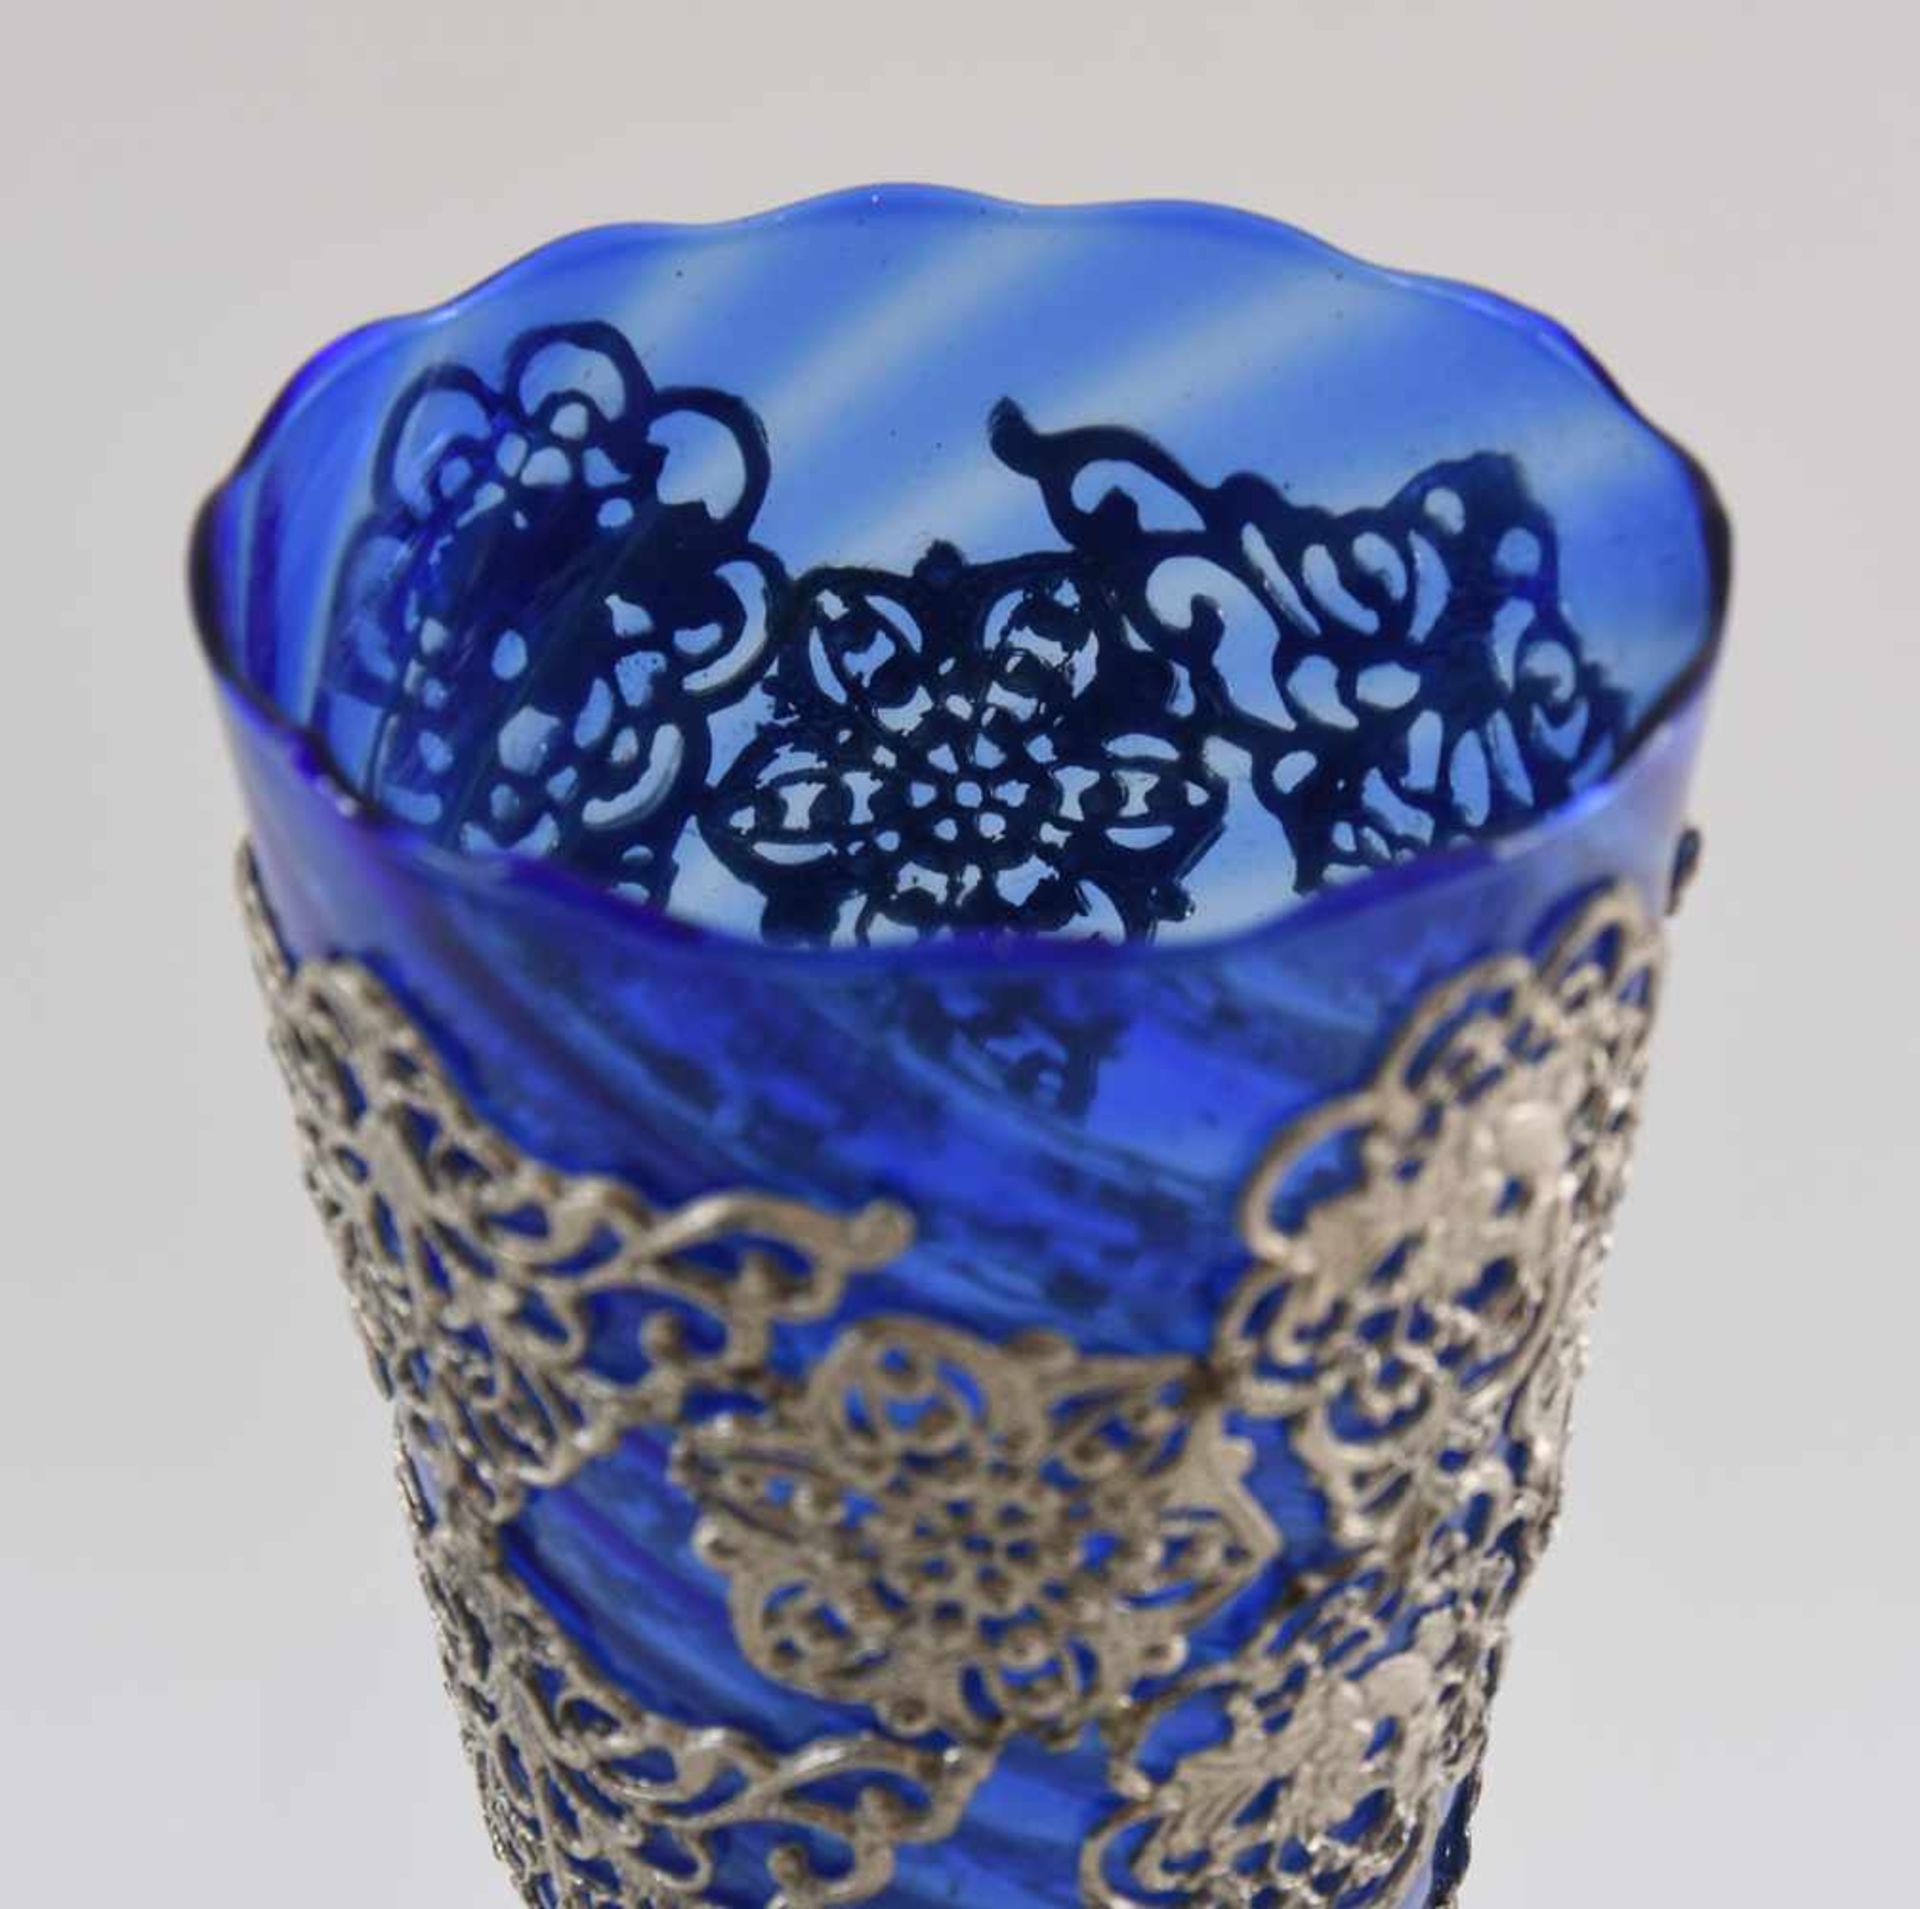 VASE, Blauglas mit dekorativen Metallapplikationen, erste Hälfte 20. Jahrhundert Bauchige, nach oben - Bild 2 aus 3